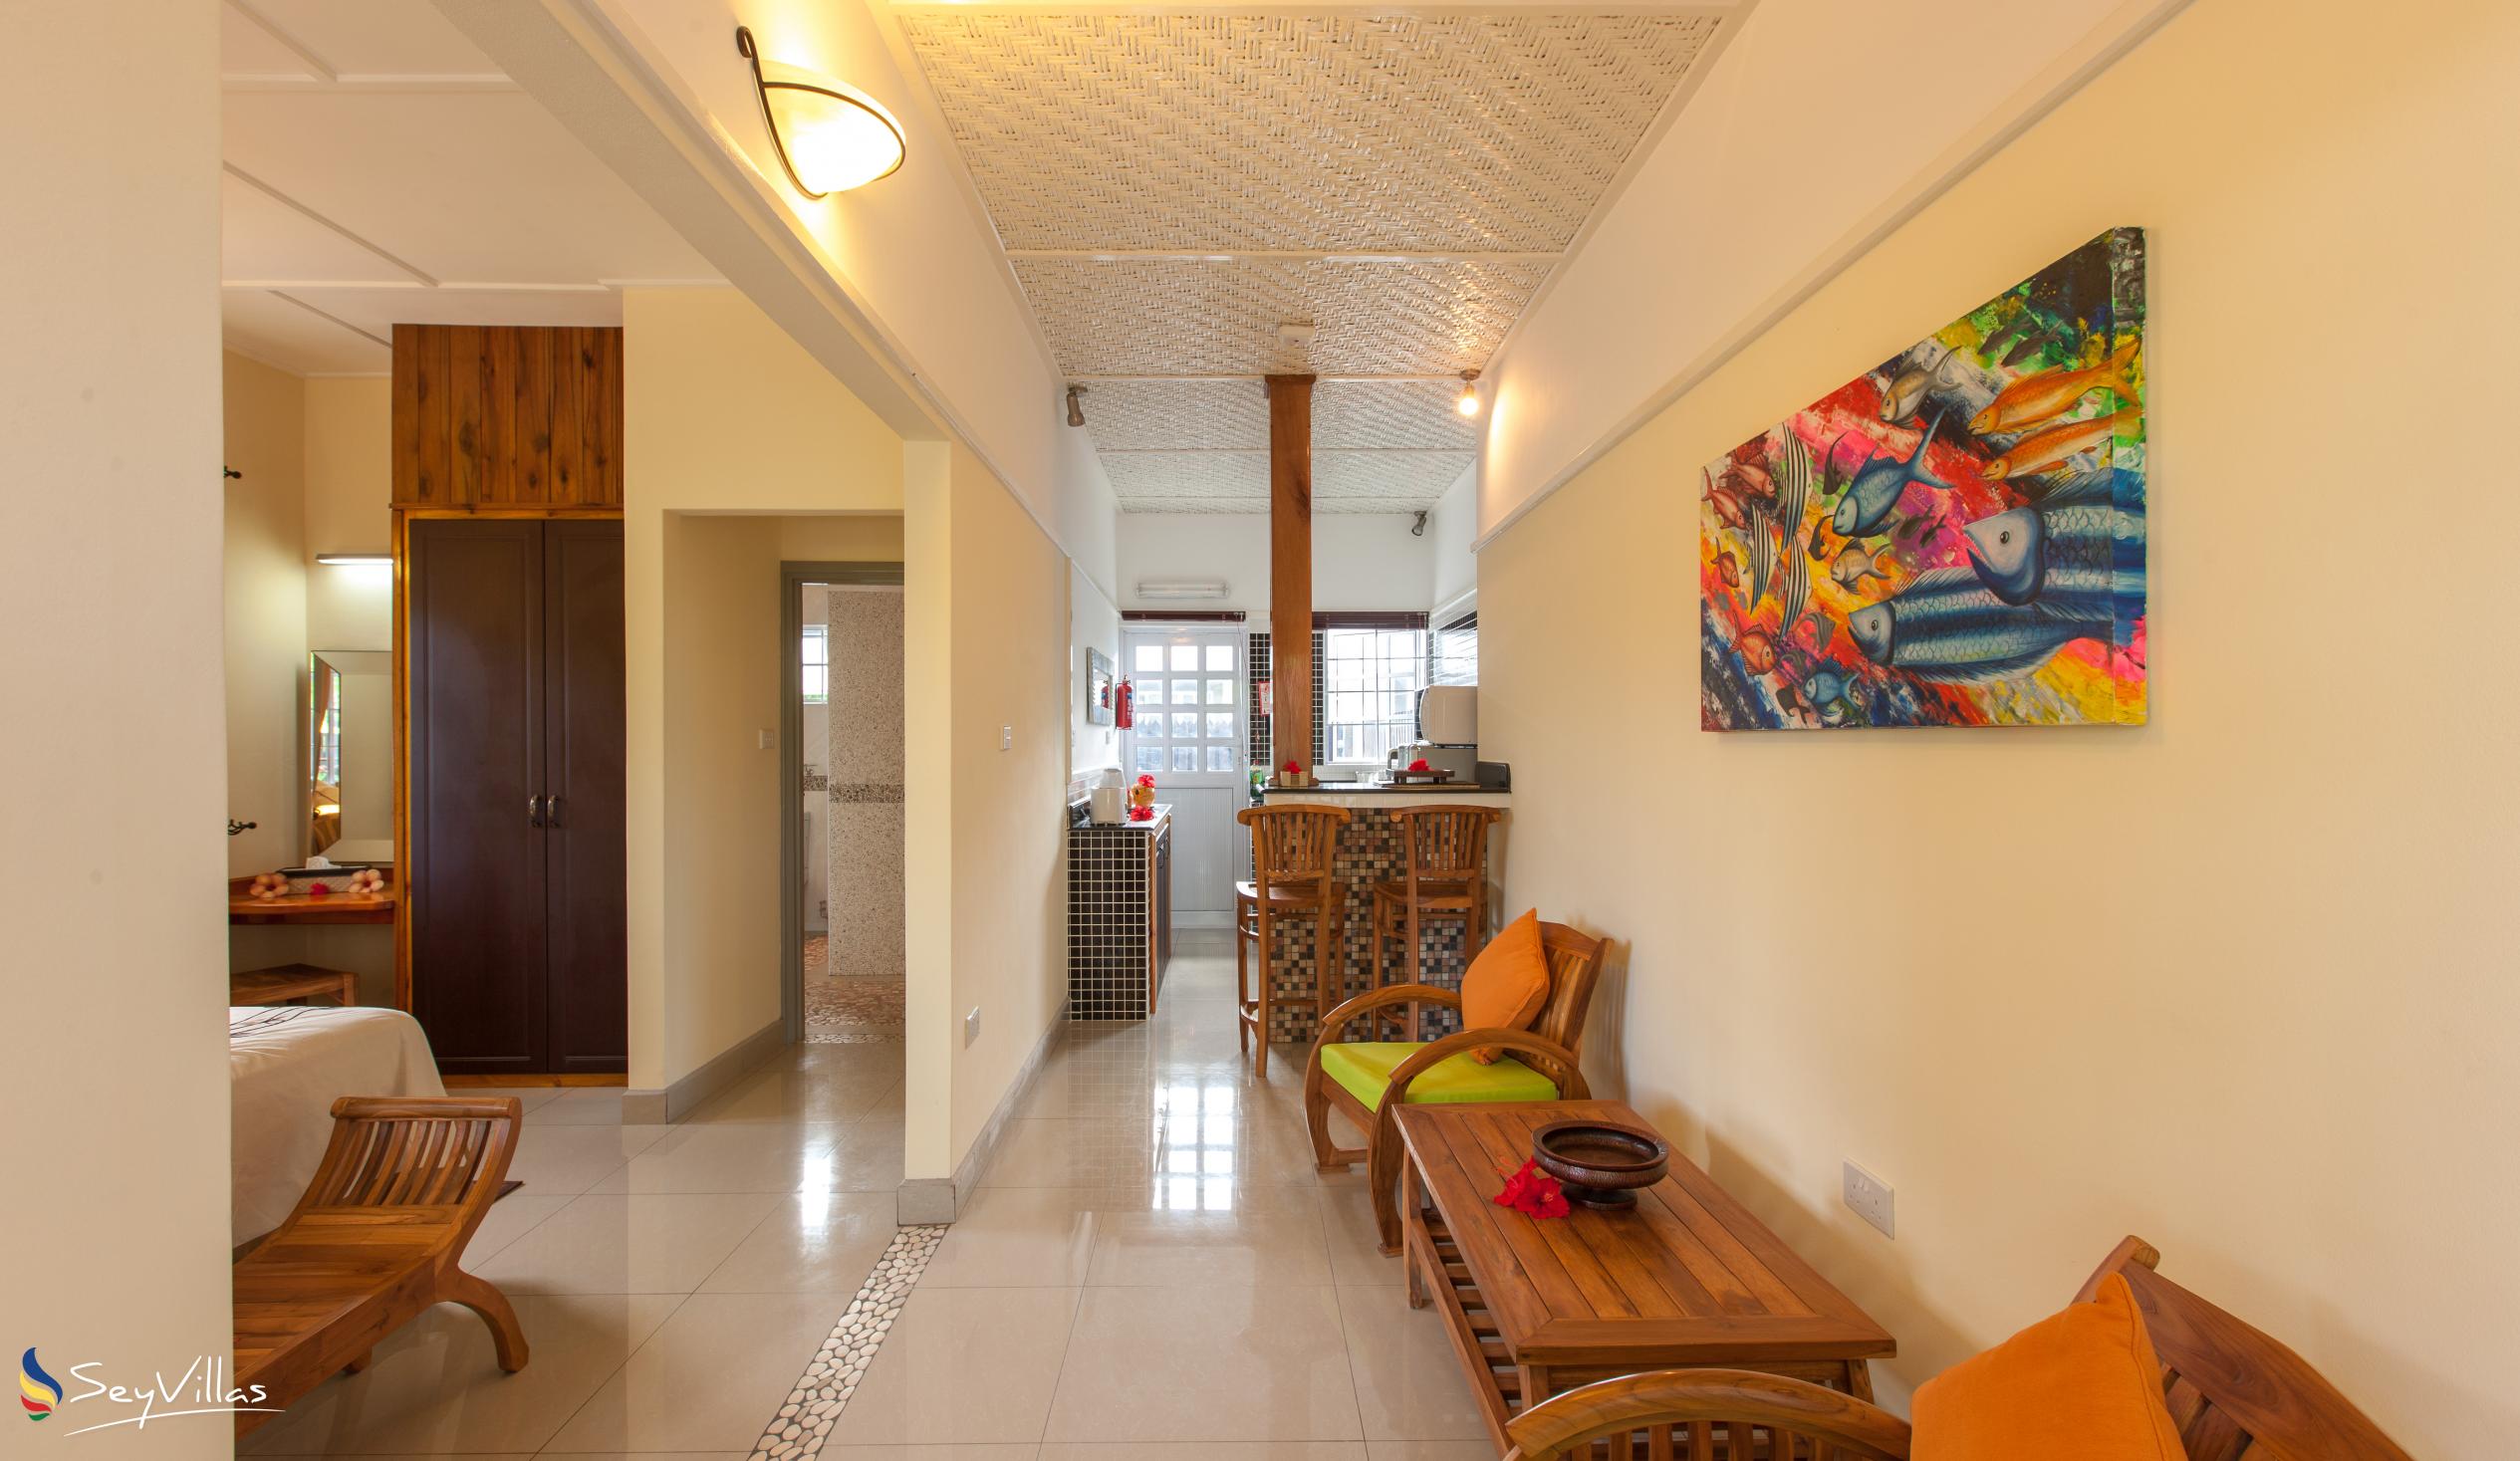 Photo 12: Maison Charme De L'ile - Garden View Apartment - La Digue (Seychelles)